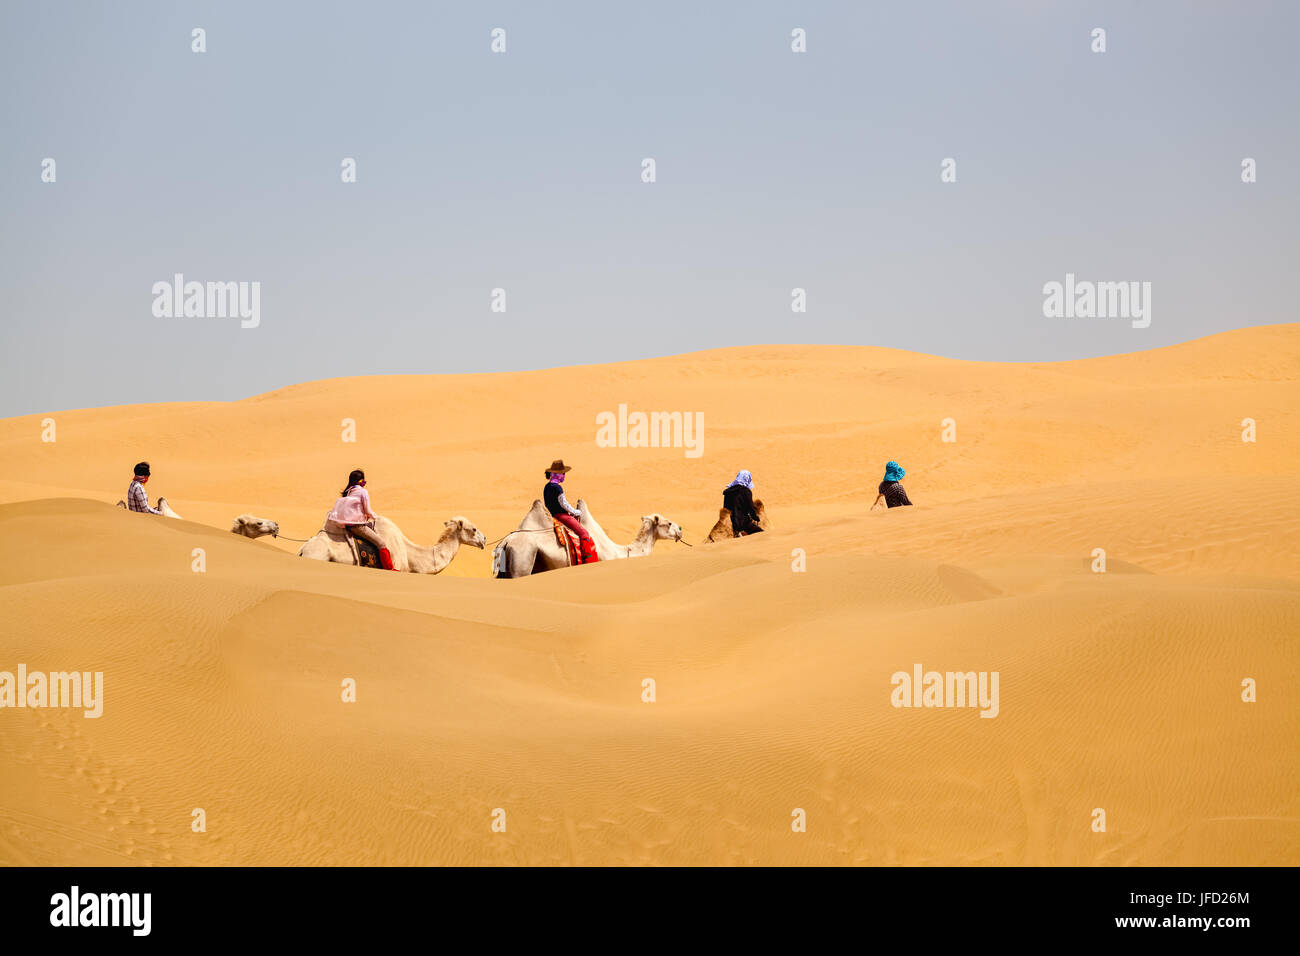 camels caravan in desert Stock Photo